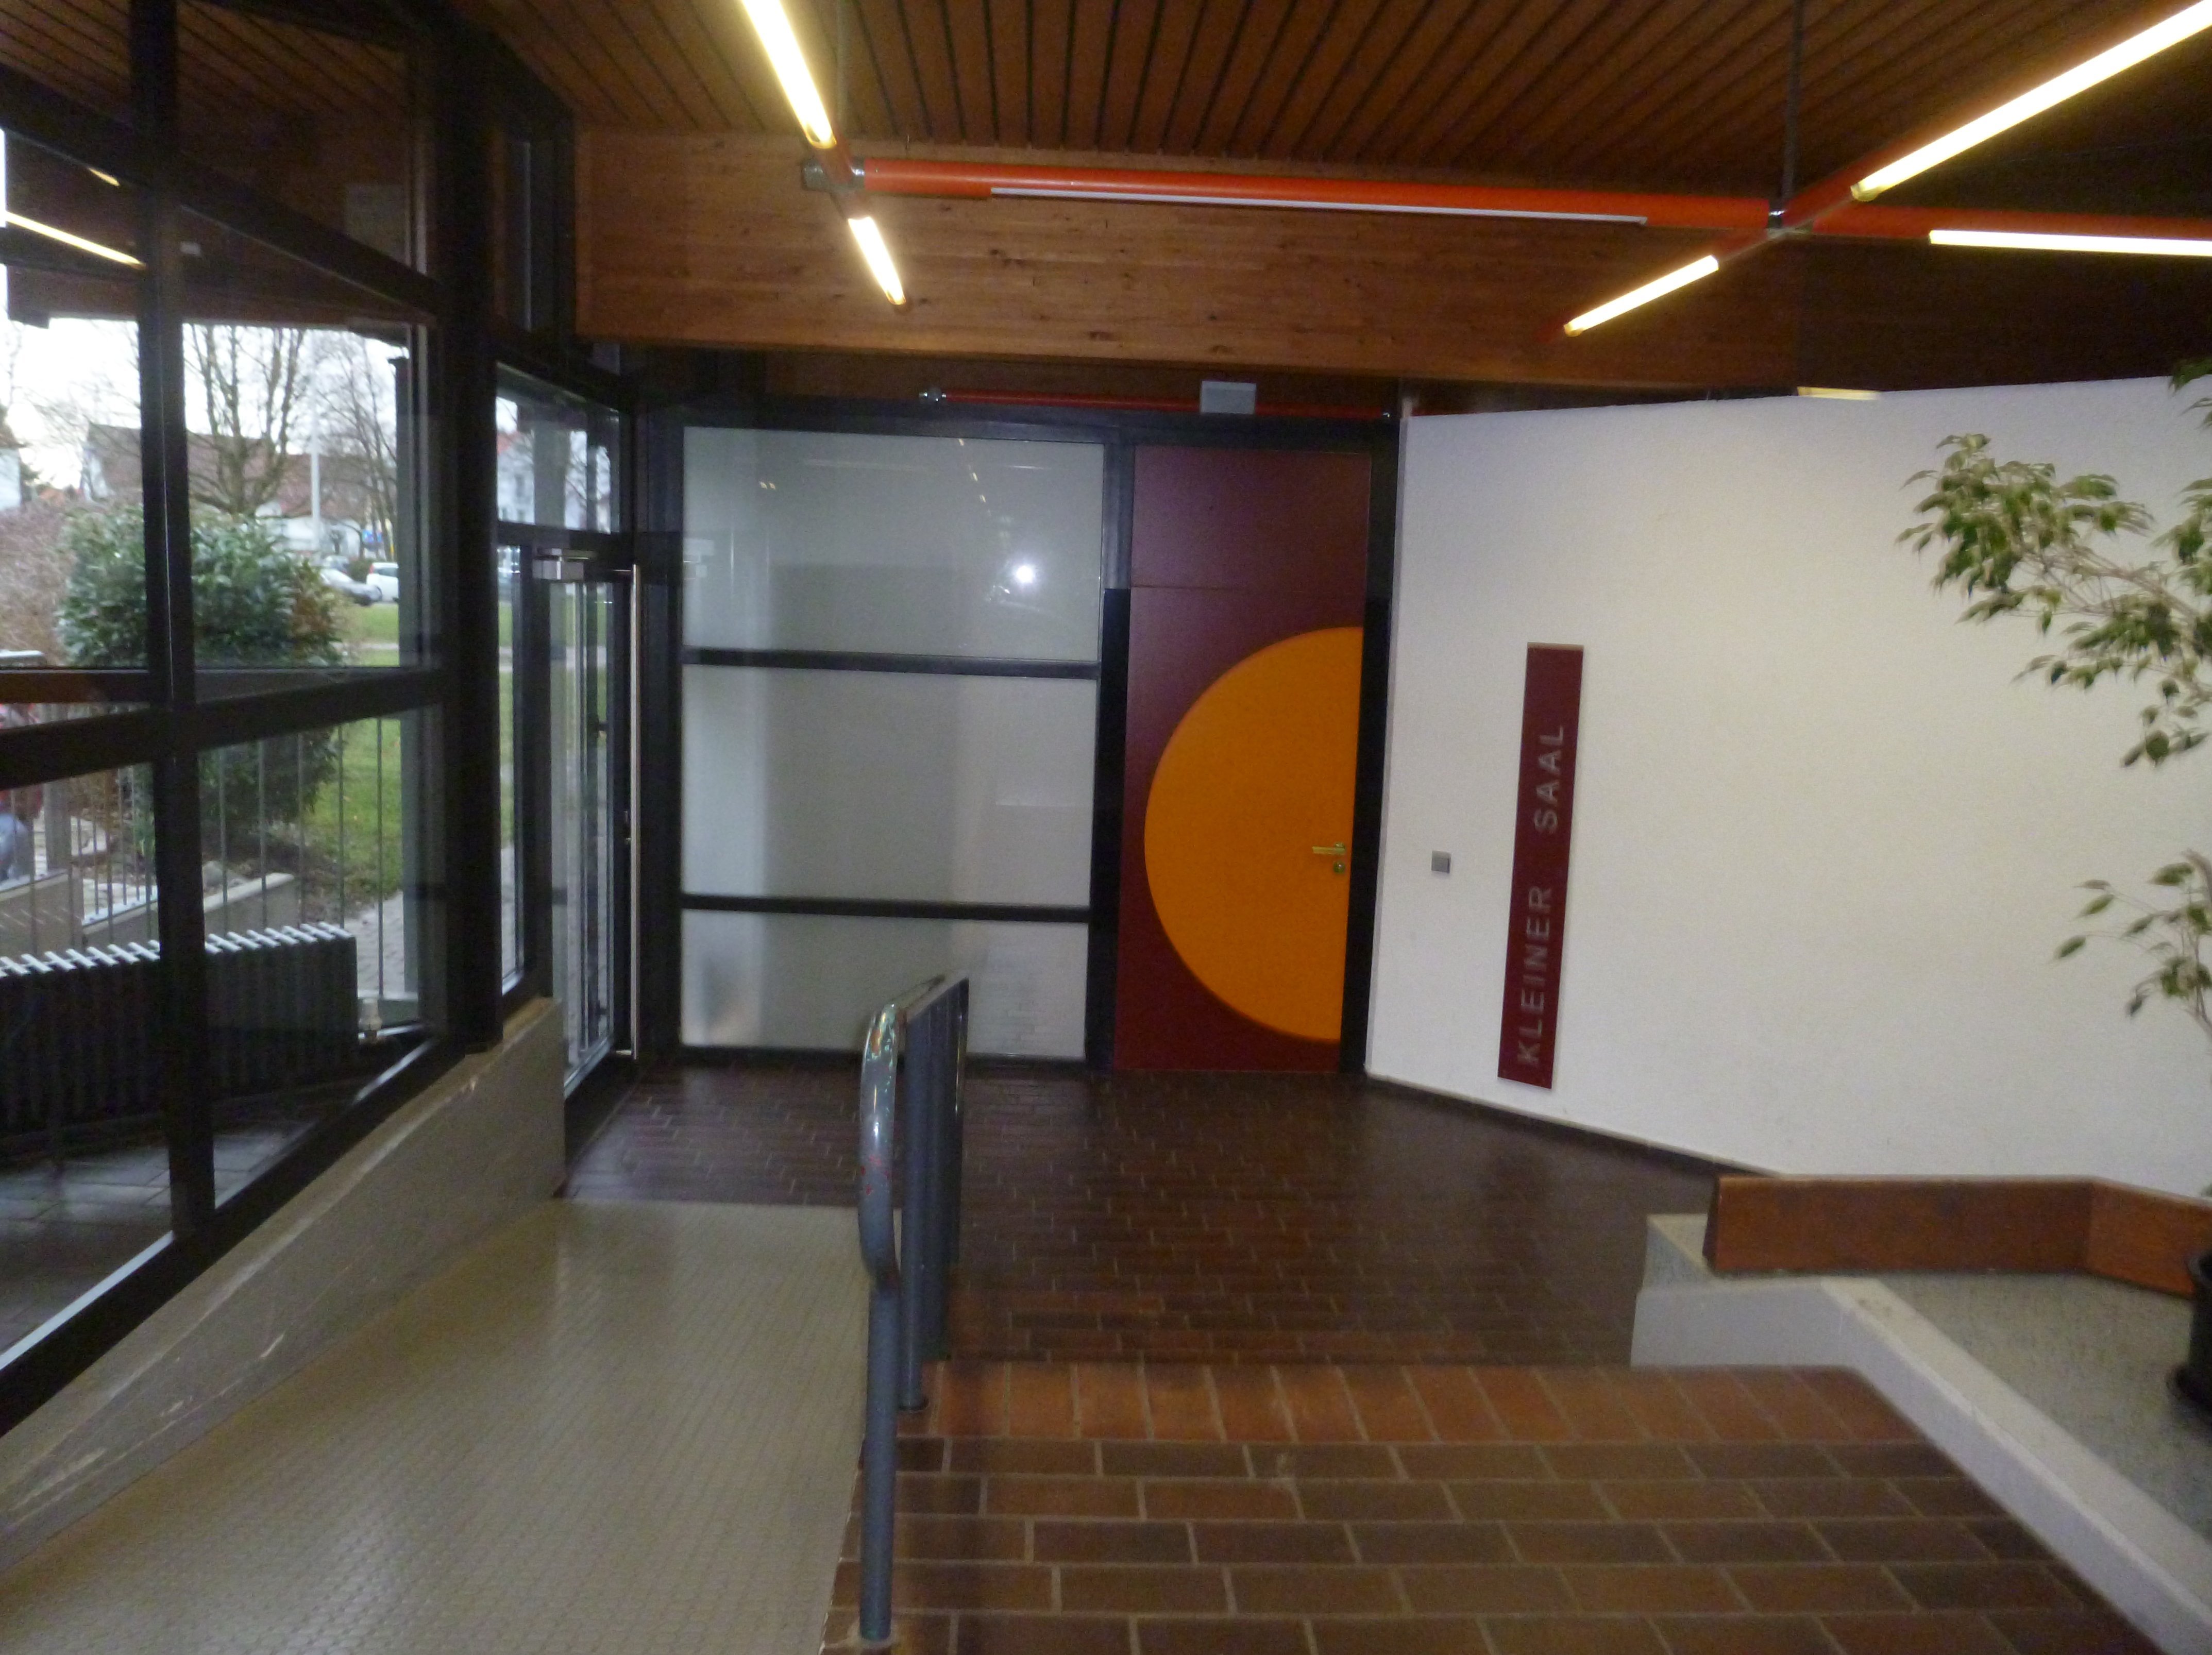  Foyer mit Eingang zum Kleinen Saal 